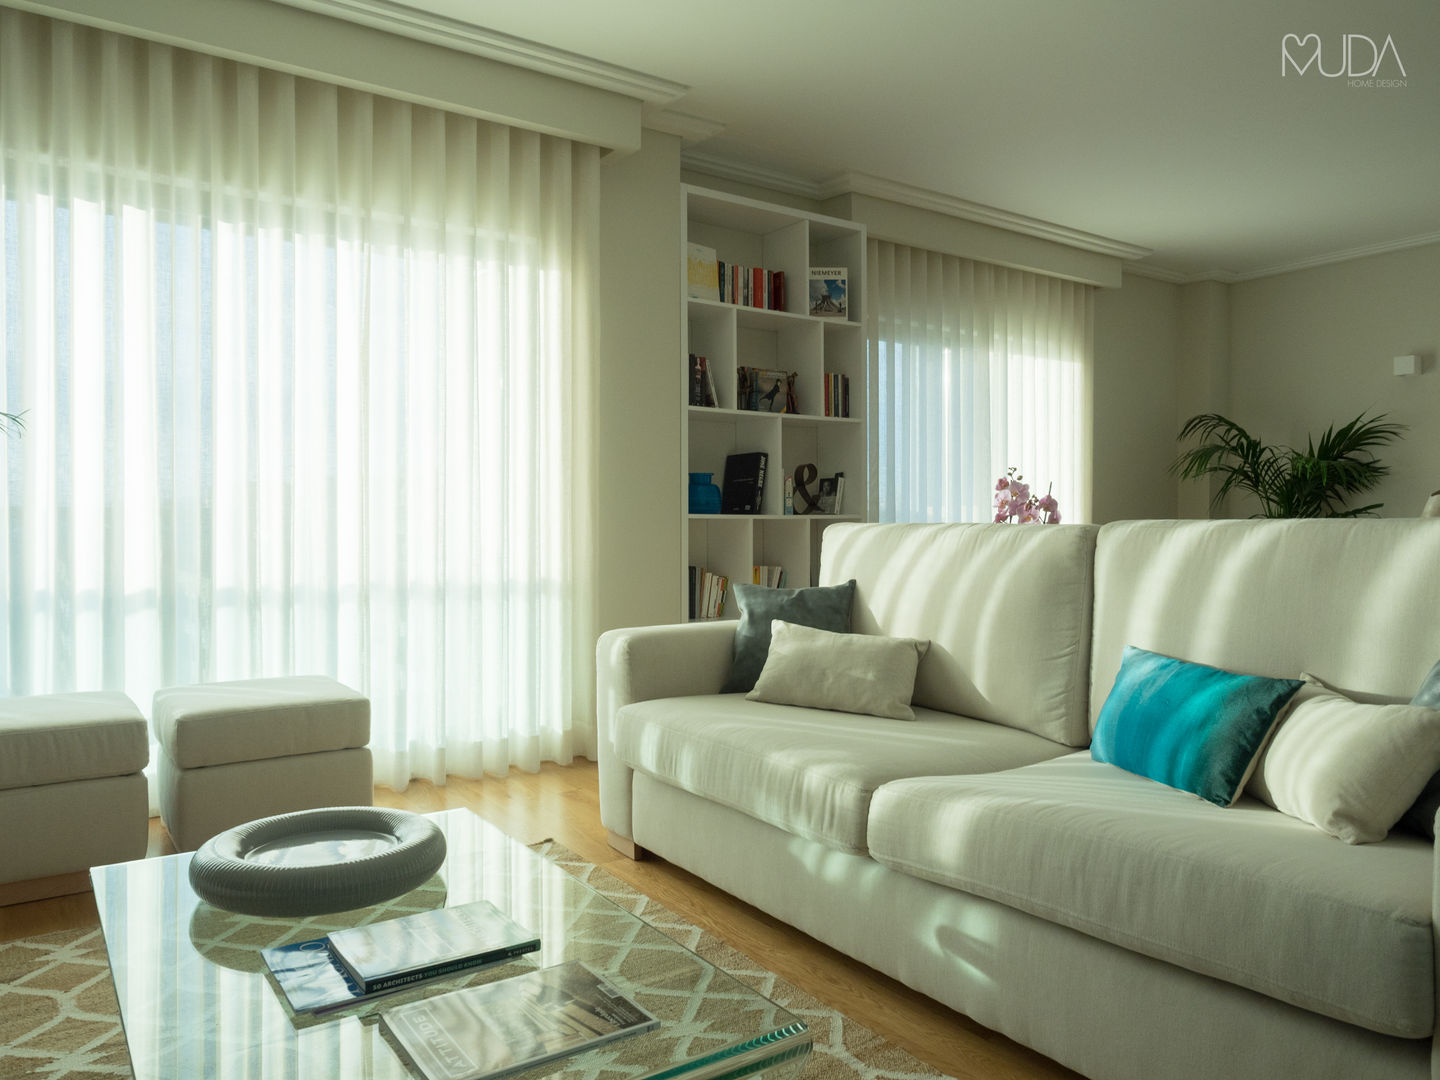 CB Apartment - Lisbon, MUDA Home Design MUDA Home Design Salas modernas